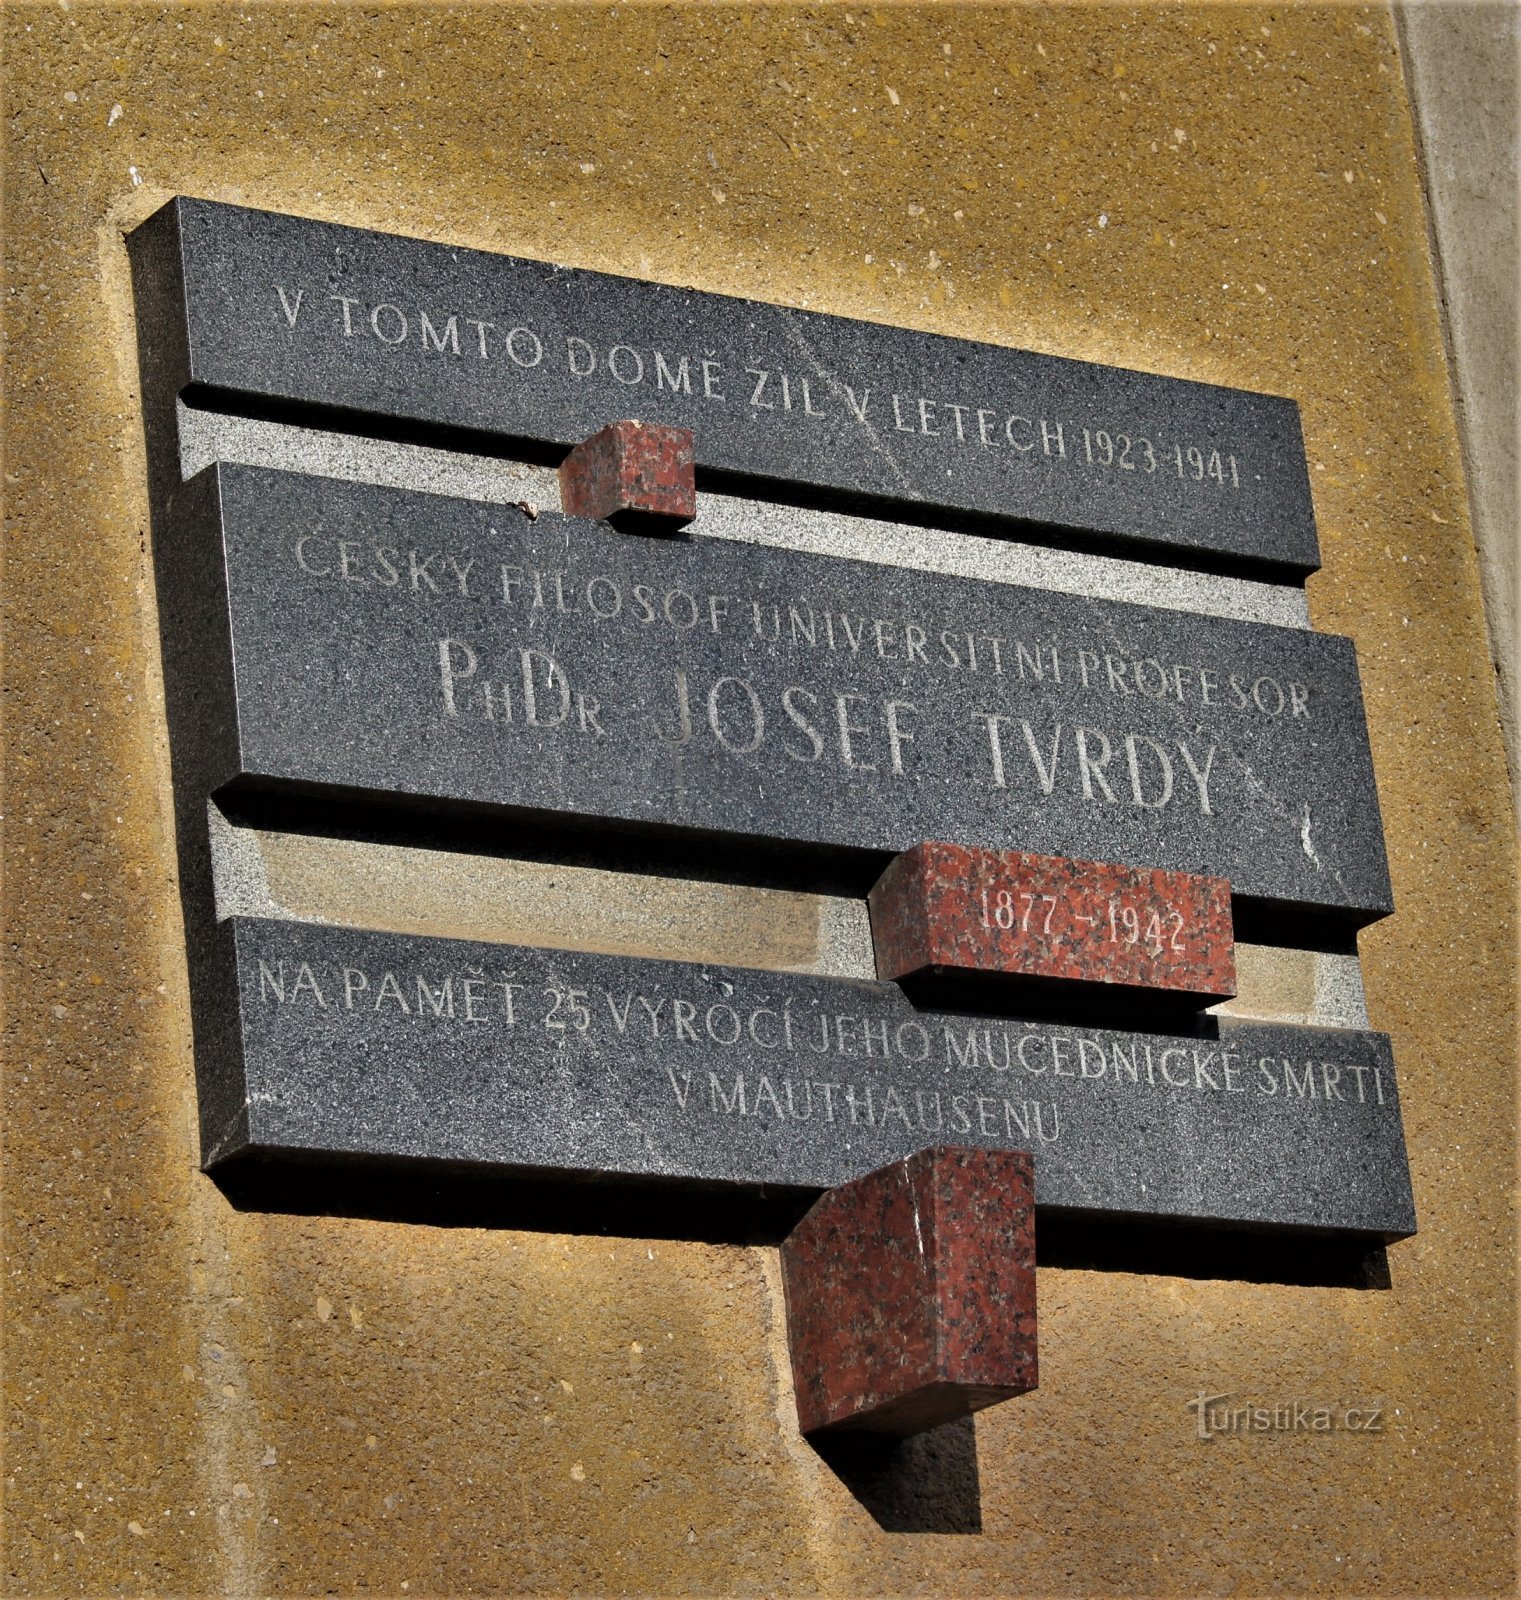 Brno - spomen ploča Josefa Tvrdyja